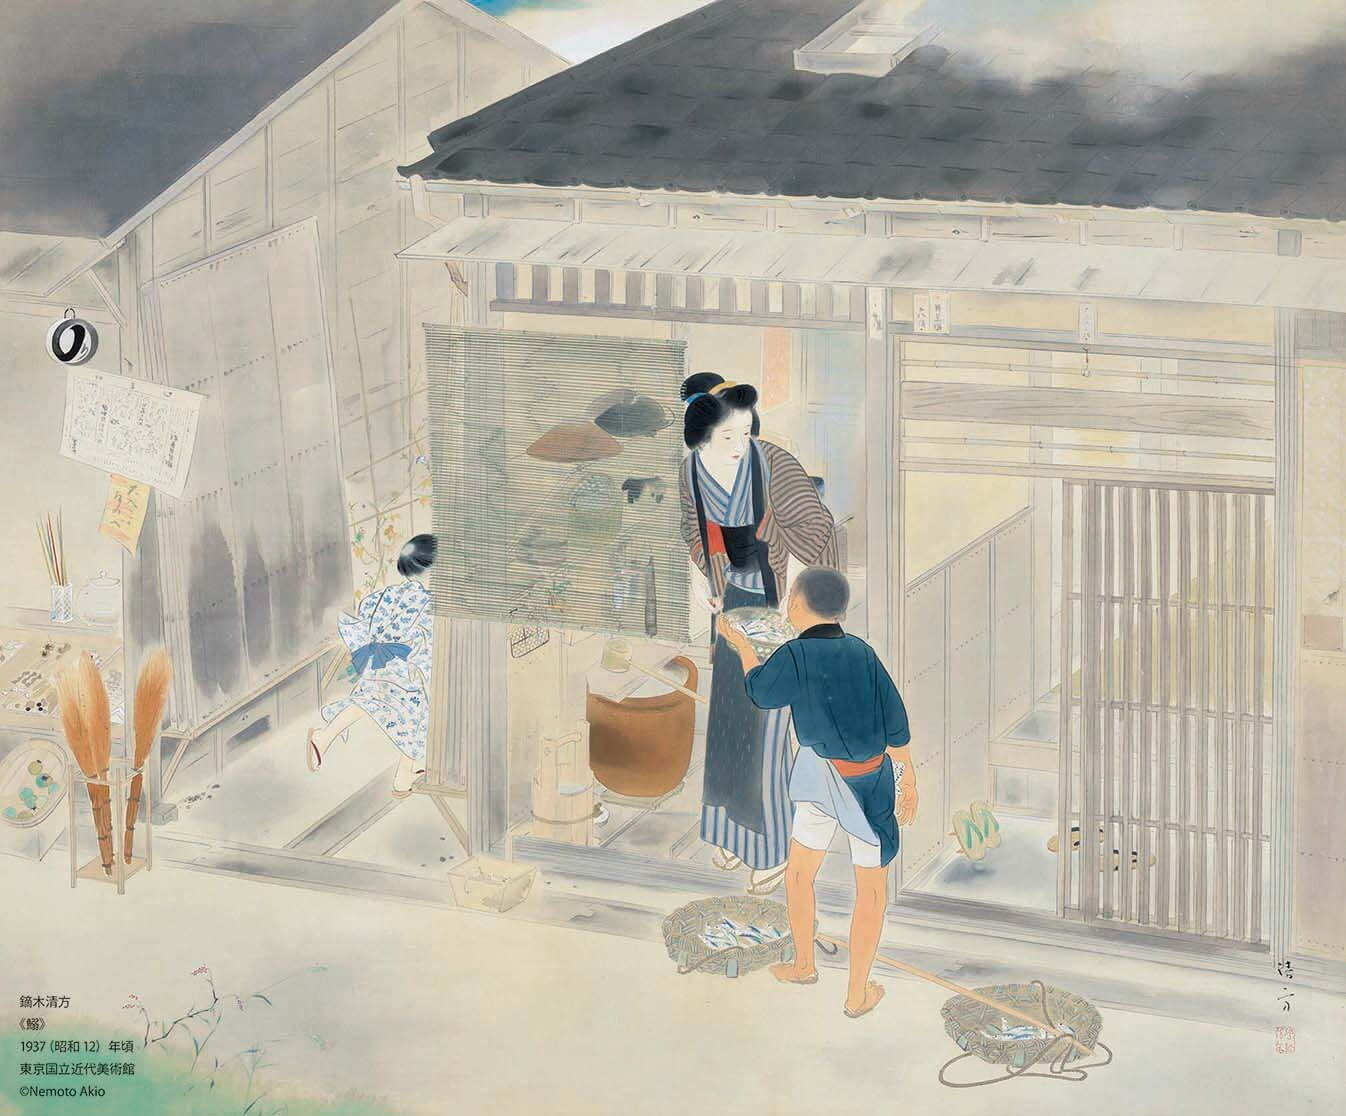 鏑木清方《鰯》
1937(昭和12)年頃、東京国立近代美術館、通期展示、絹本彩色・軸、72.0×86.0cm